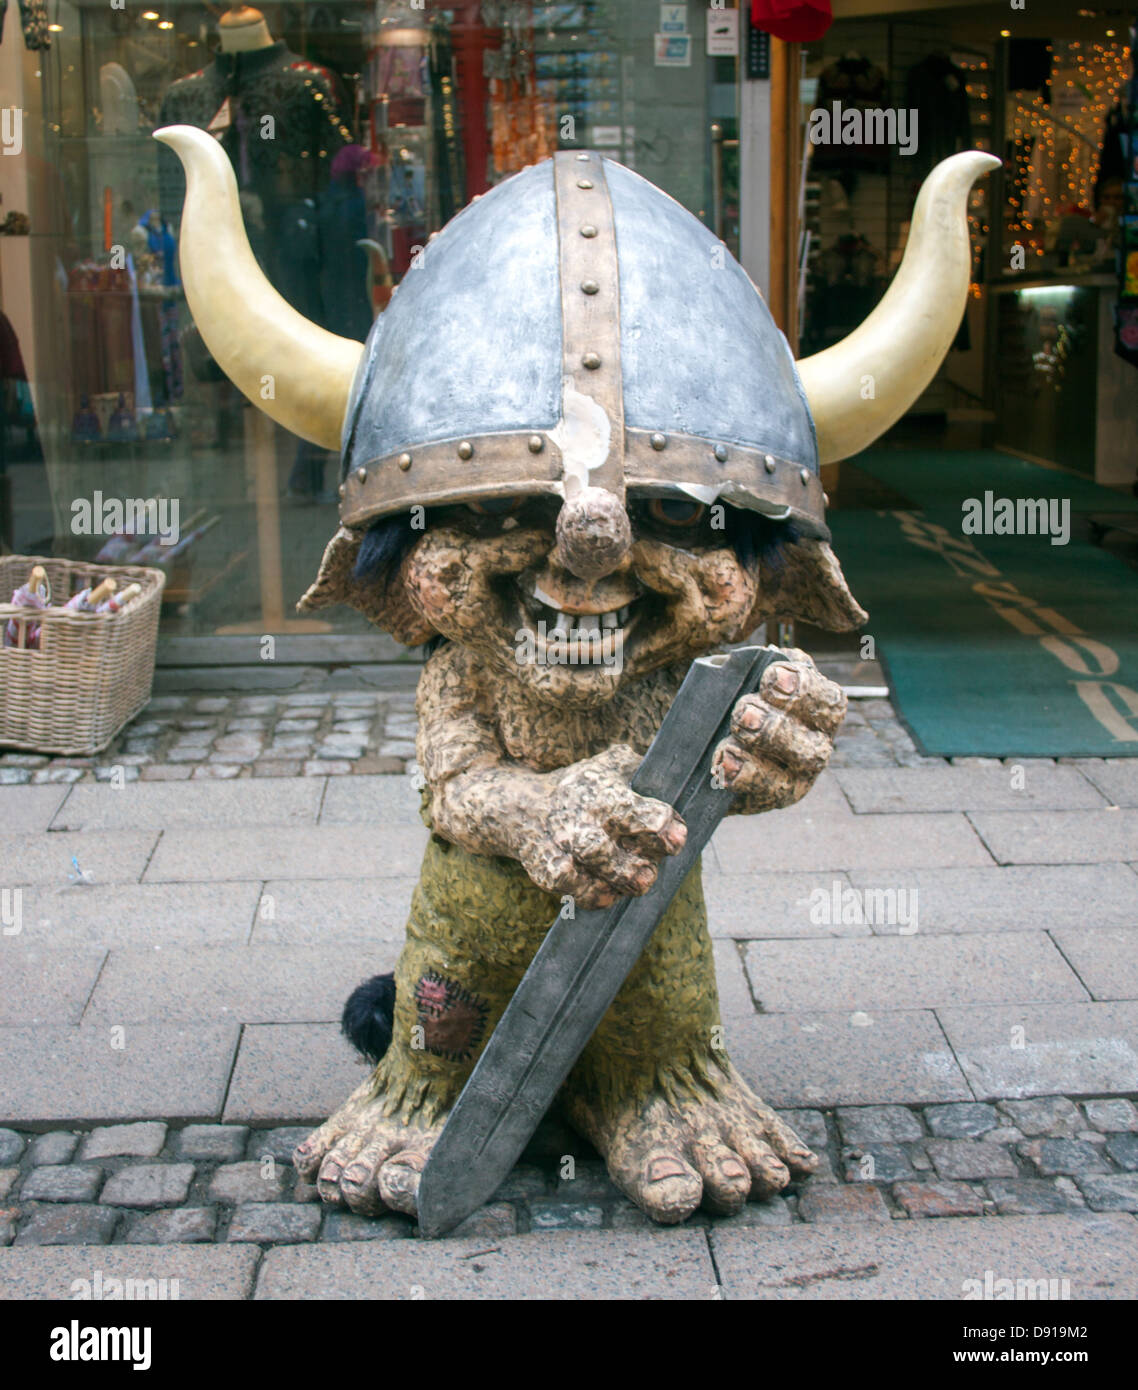 Troll Viking statue outside a store in Copenhagen Denmark Stock Photo -  Alamy